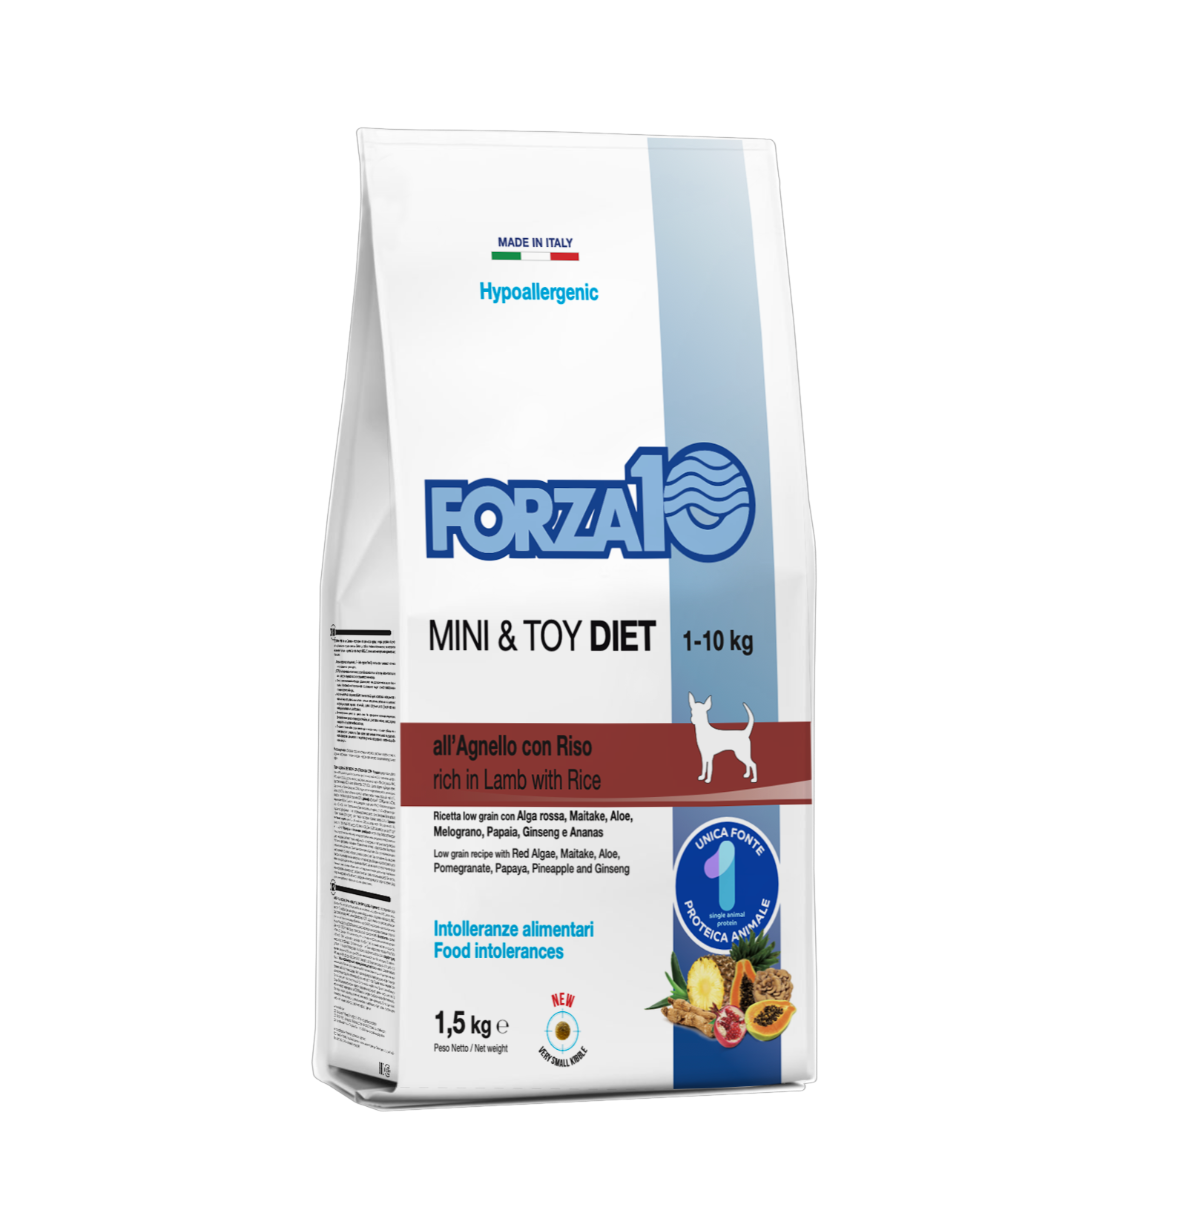 FORZA10  Mini & Toy DIET ir pilnvērtīga, sabalansēta barība ar jēru -  hipoalerģiska sausā barība pašu mazāko šķirņu suņiem ar barības (barības sastāvdaļu) nepanesību.